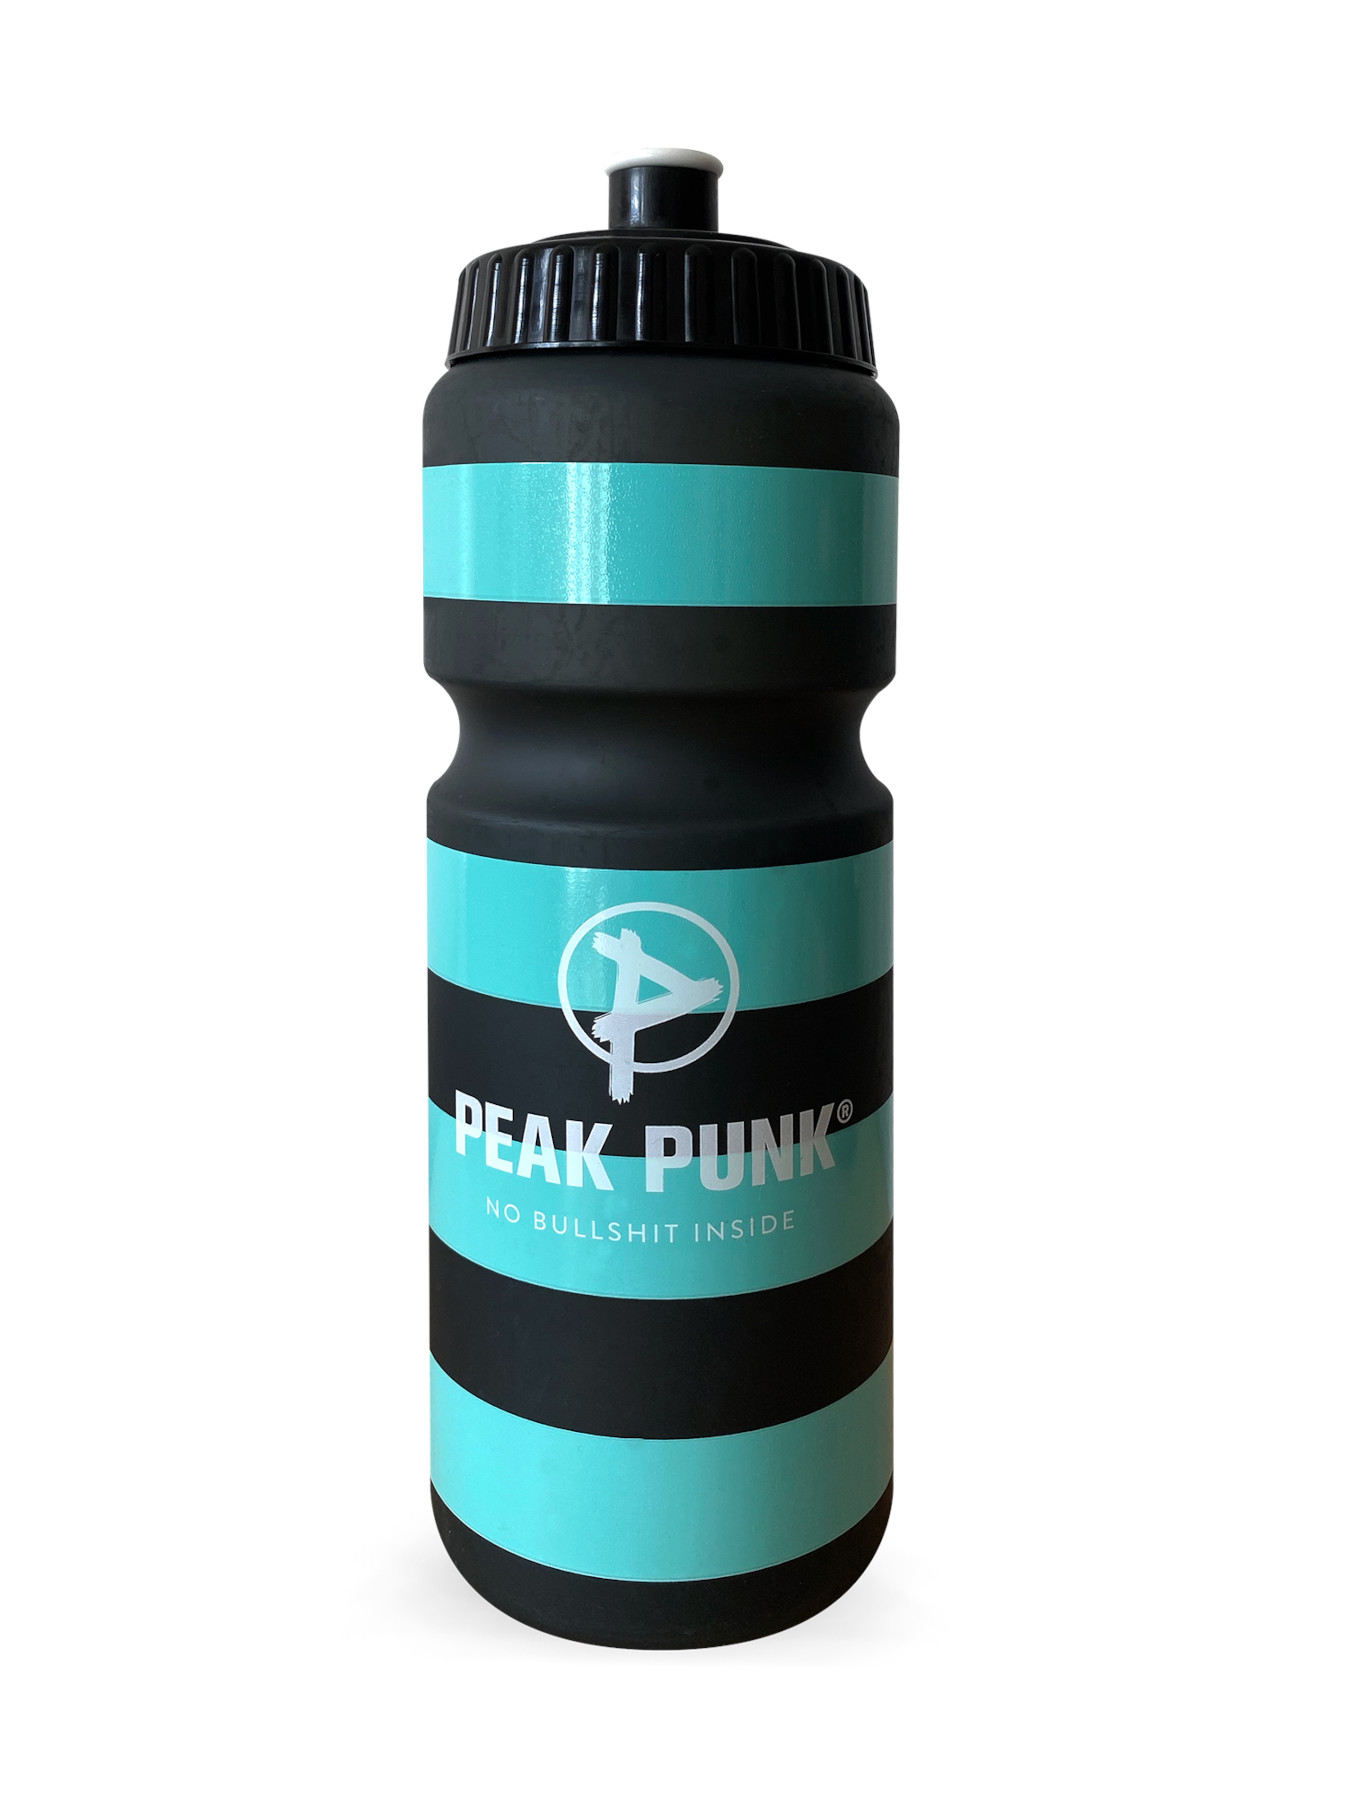 Productfoto van Peak Punk Biobased Sport Bottle 750ml - Coco